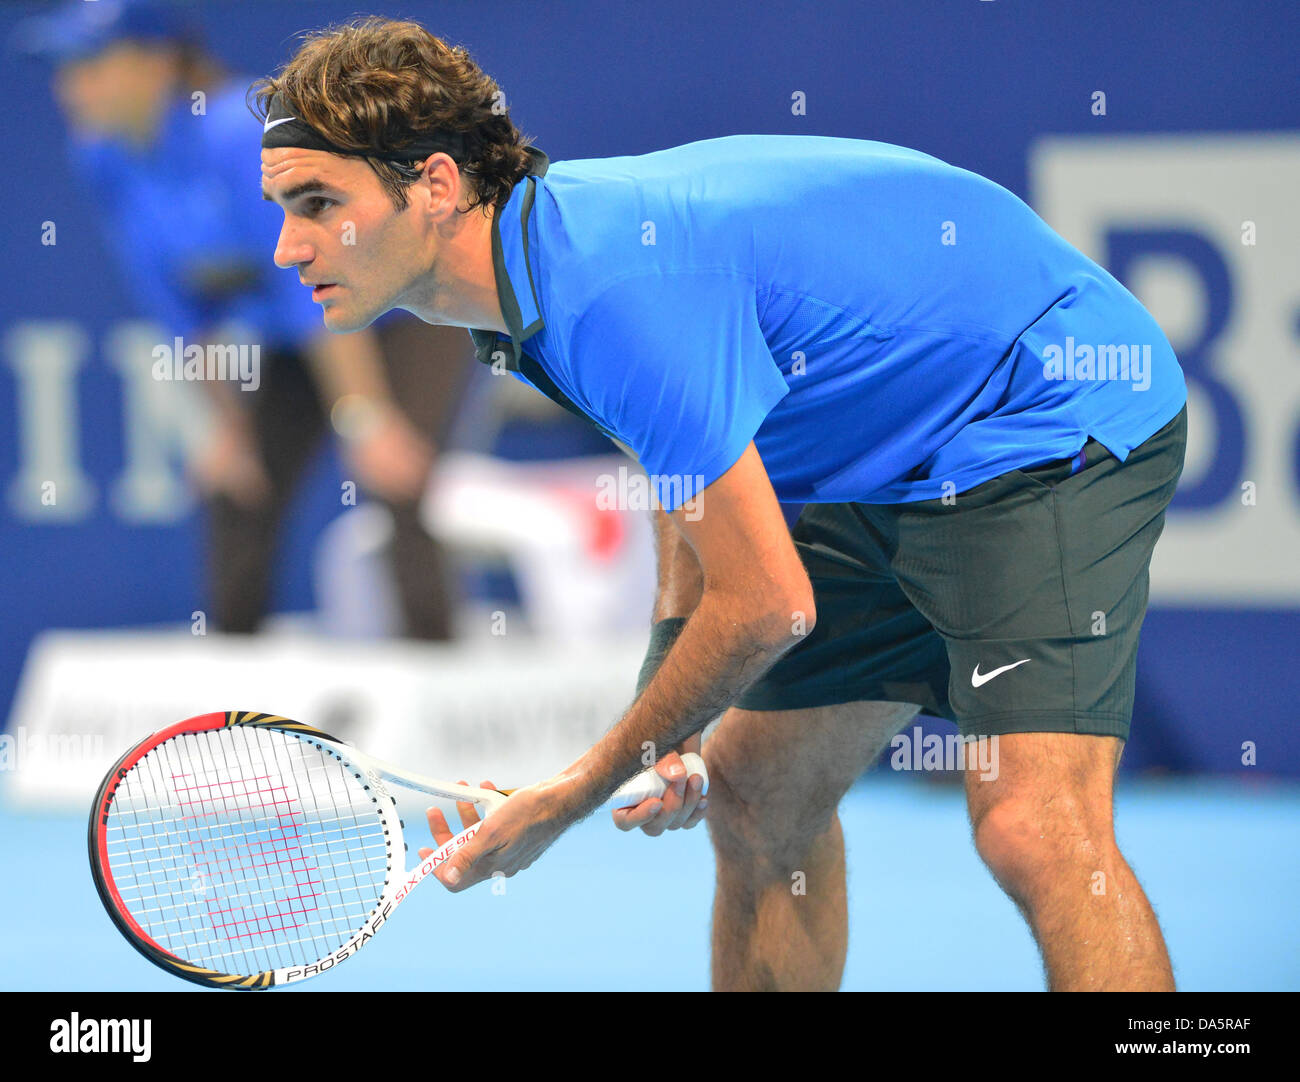 Roger Federer, Federer, Svizzero, interni di Basilea, in Svizzera, sport, tennis, giocatore di tennis, nessun modello di rilascio, 2012 Foto Stock